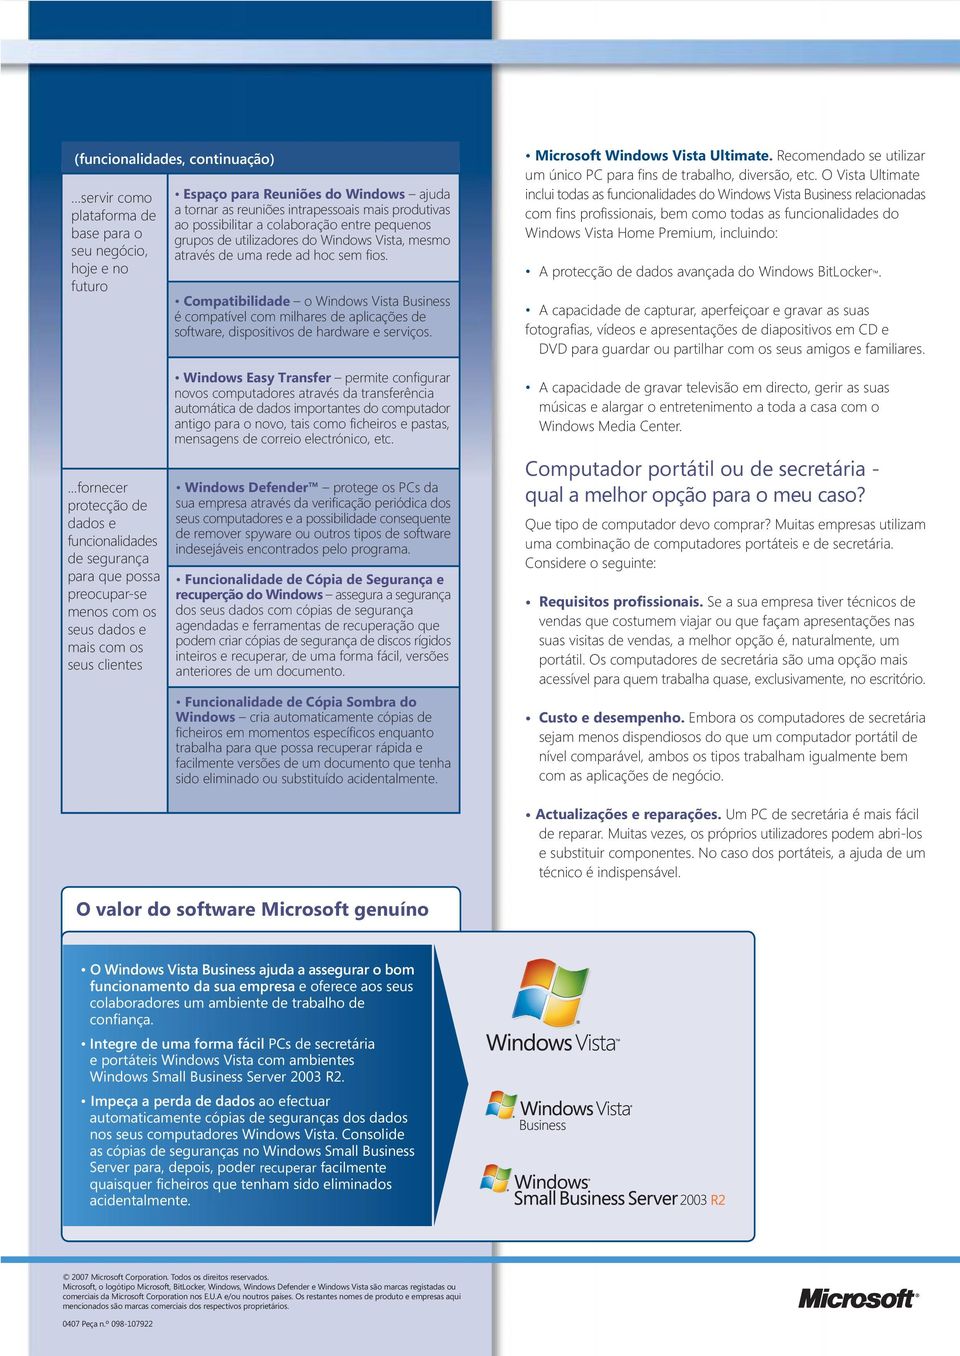 Compatibilidade o Windows Vista Business é compatível com milhares de aplicações de software, dispositivos de hardware e serviços. Microsoft Windows Vista Ultimate.